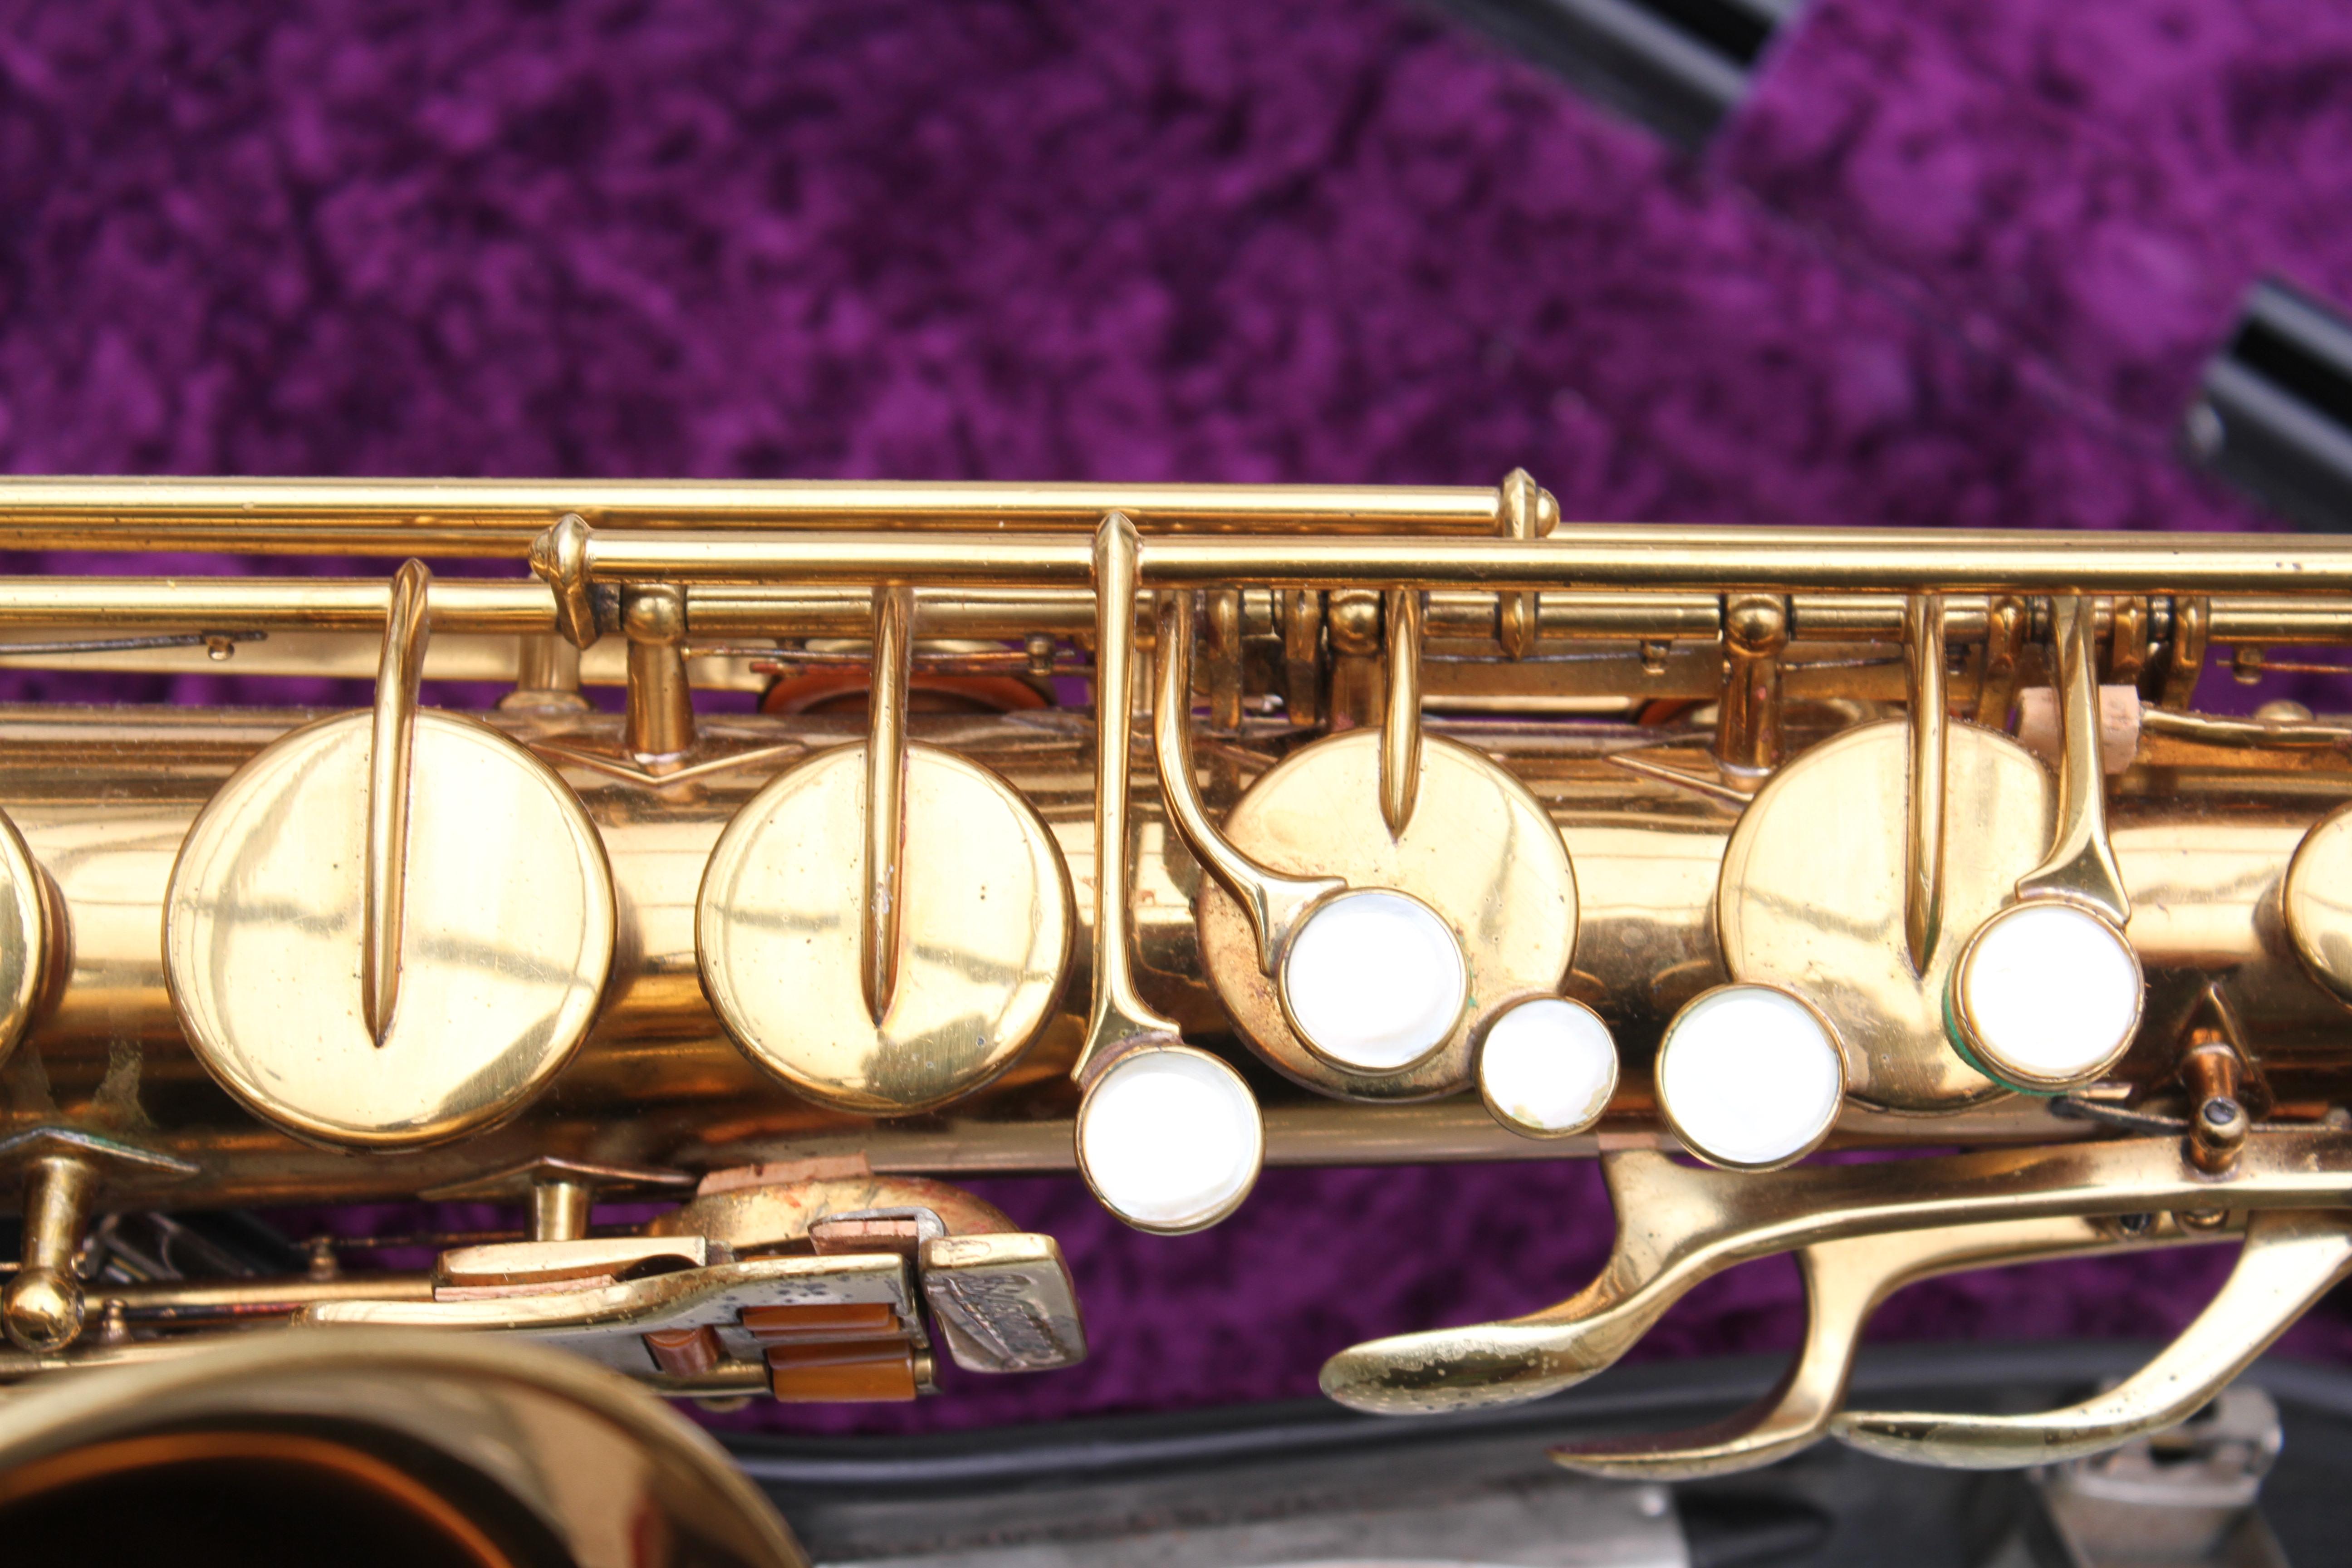 value of a buescher tenor sax